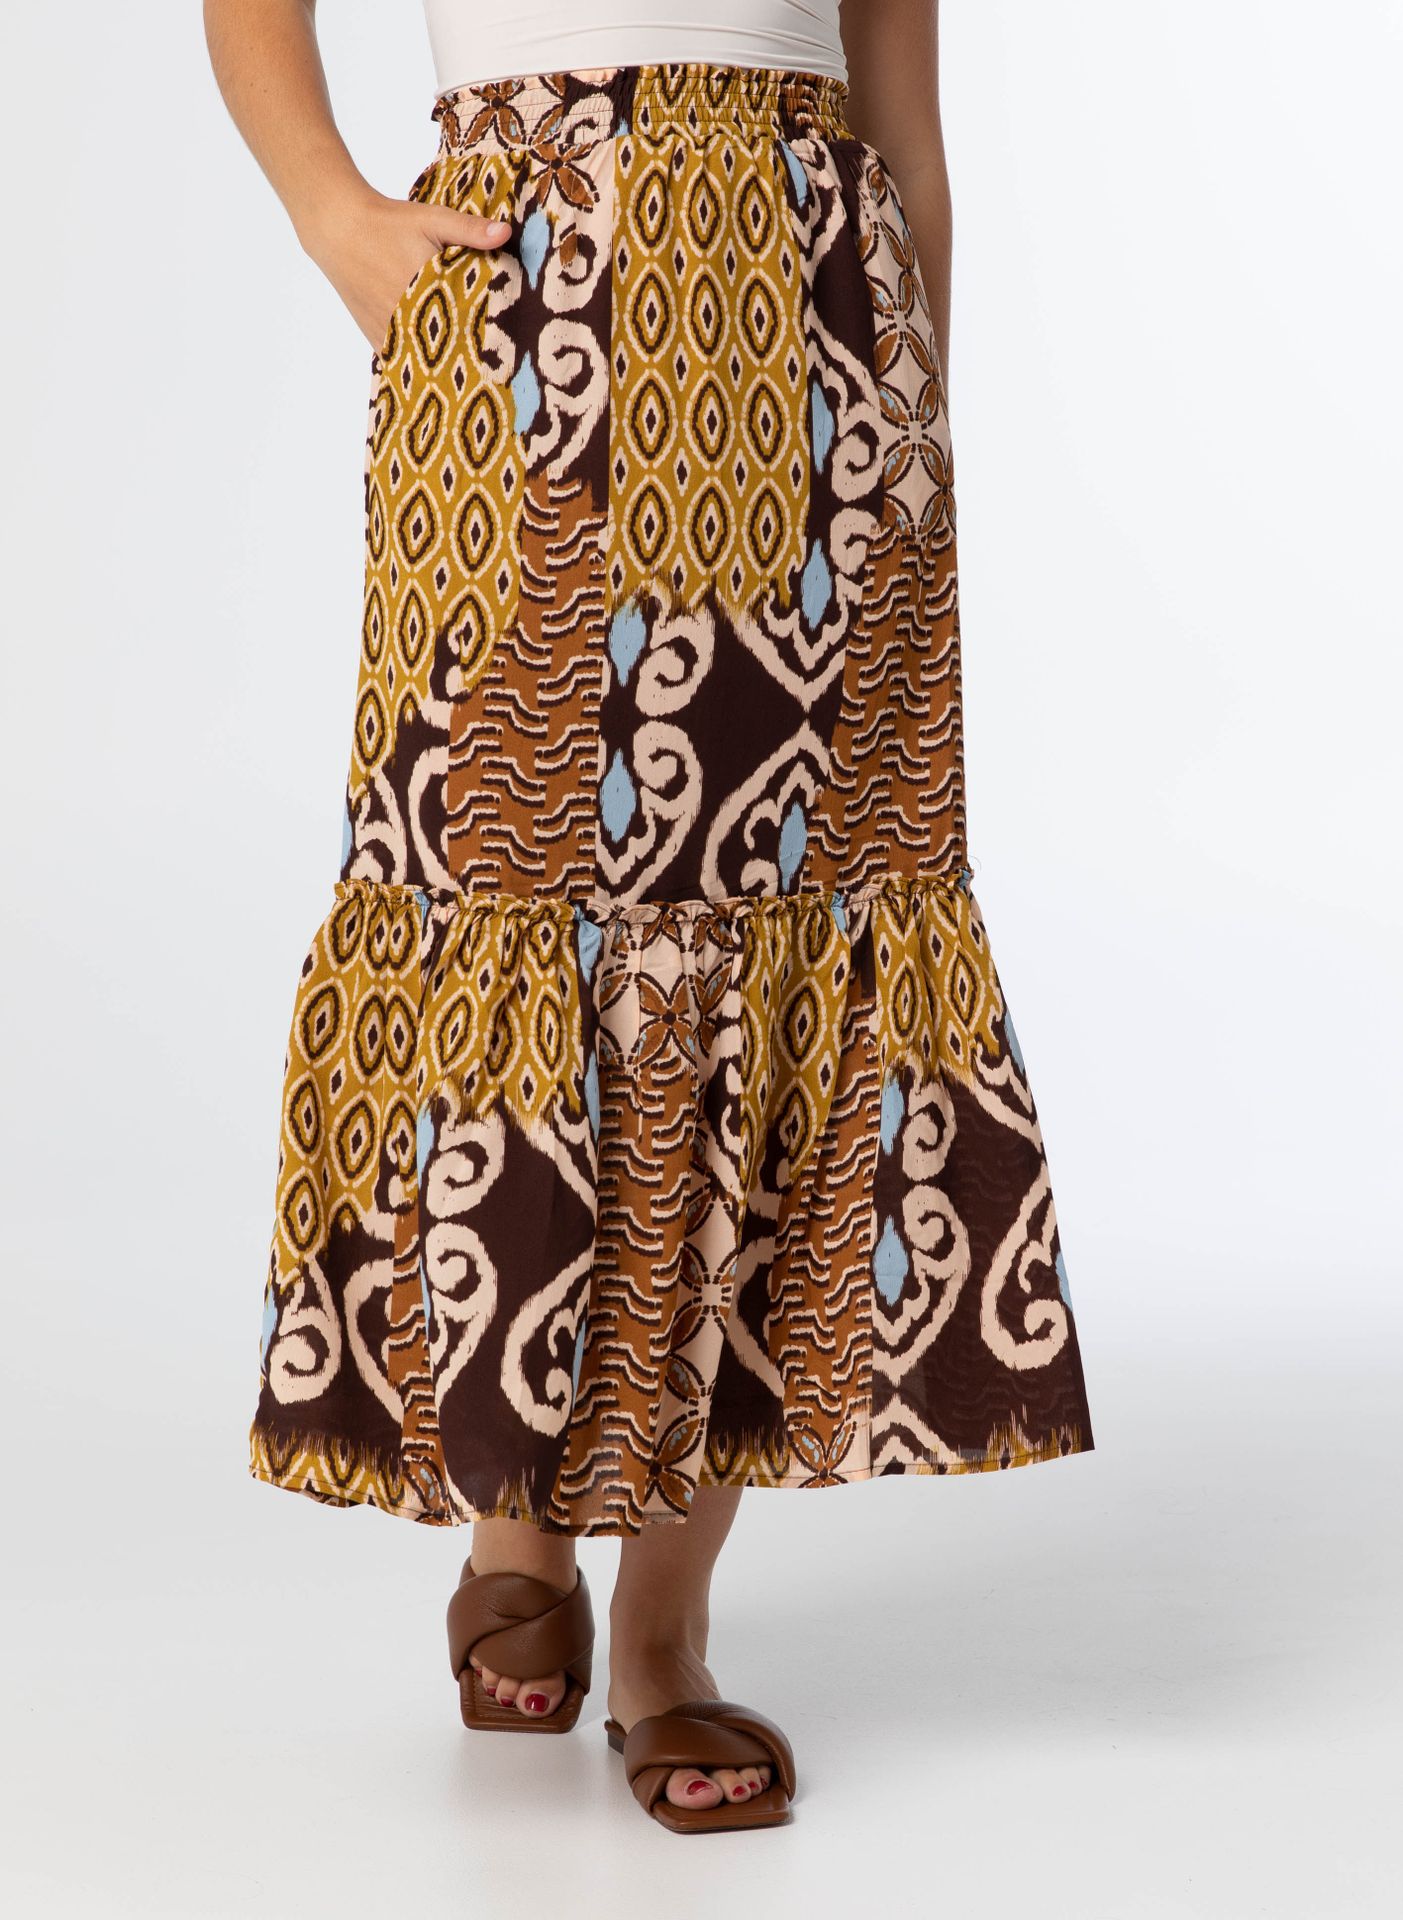 Norah Skirt, N1223 brown multicolor 212854-220